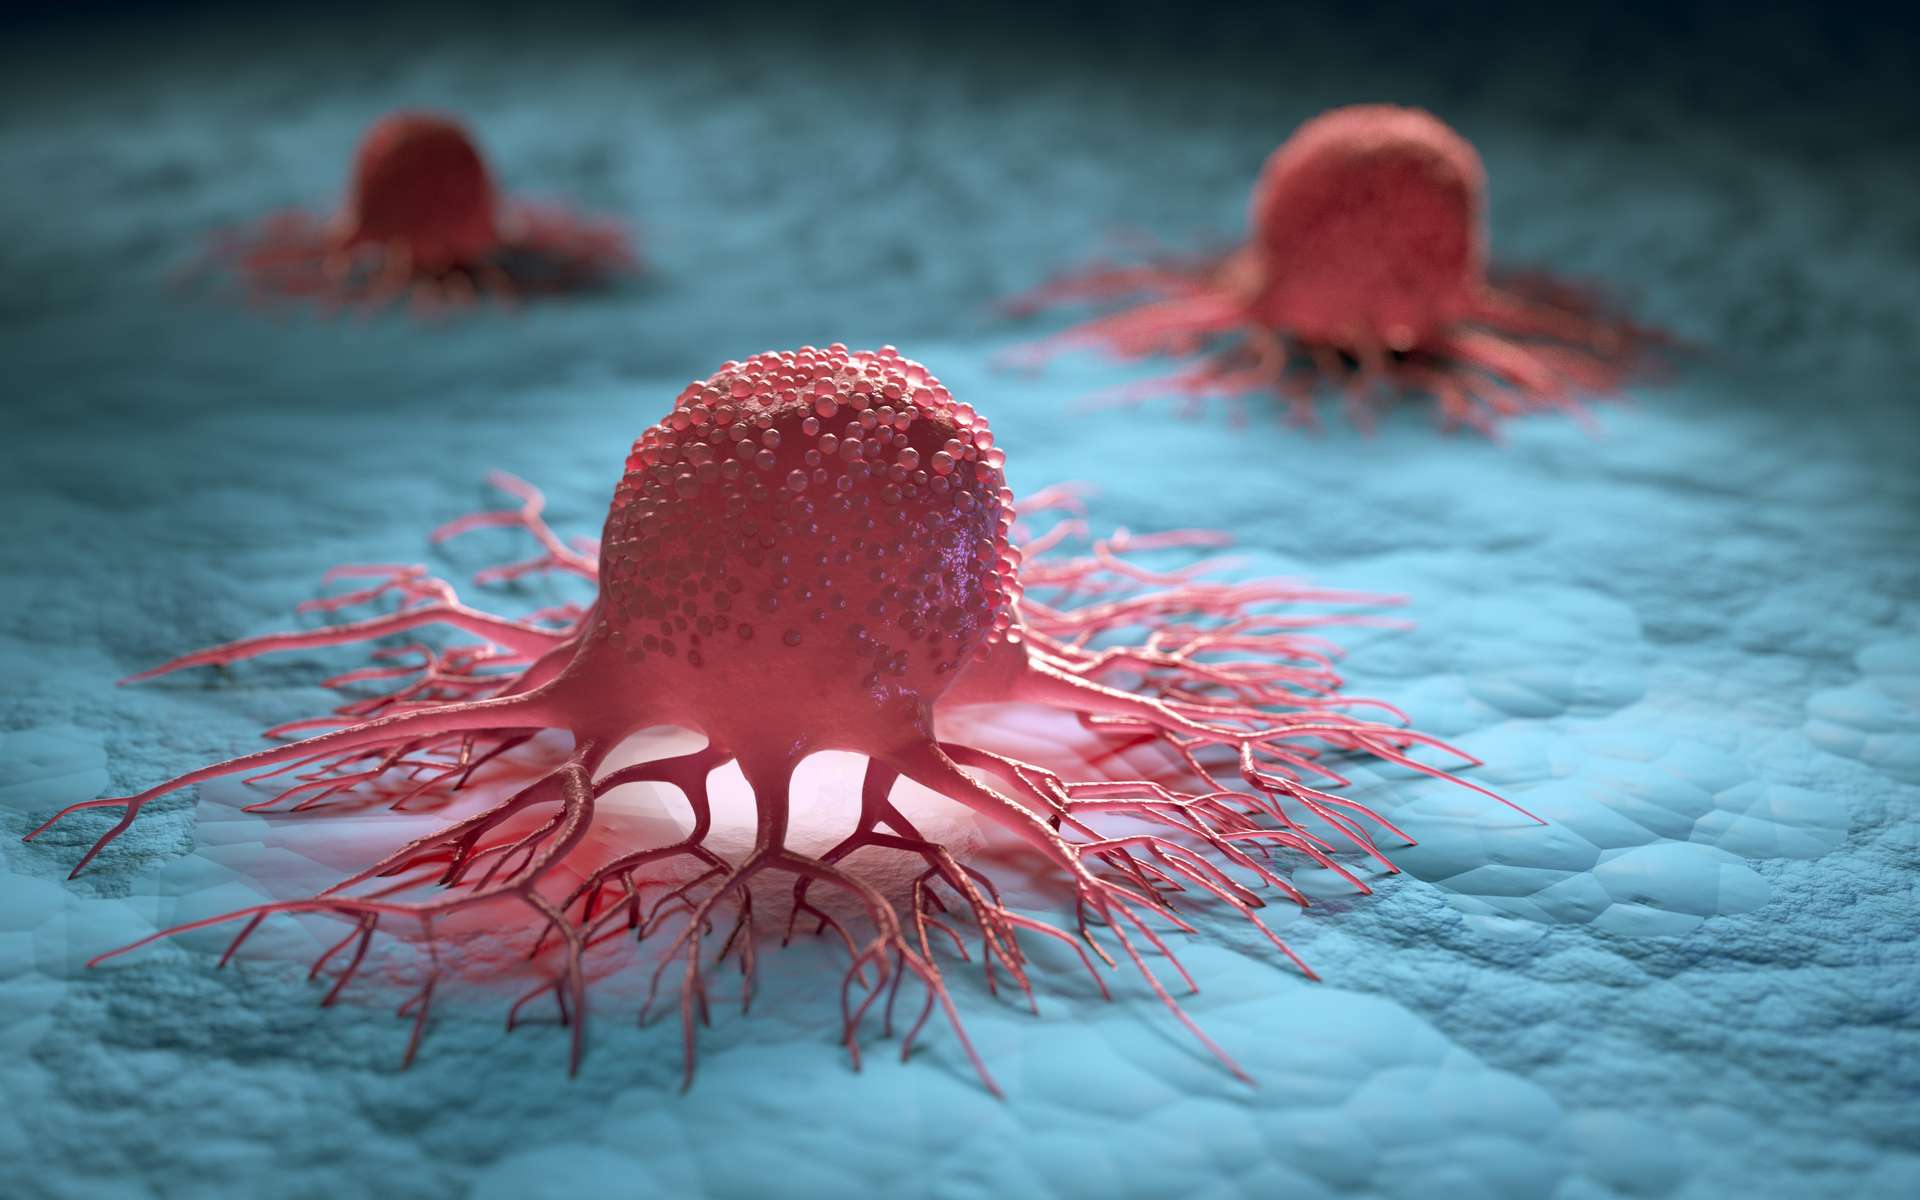 Une étude fournit de nouvelles informations sur le lien entre le régime occidental et le cancer colorectal